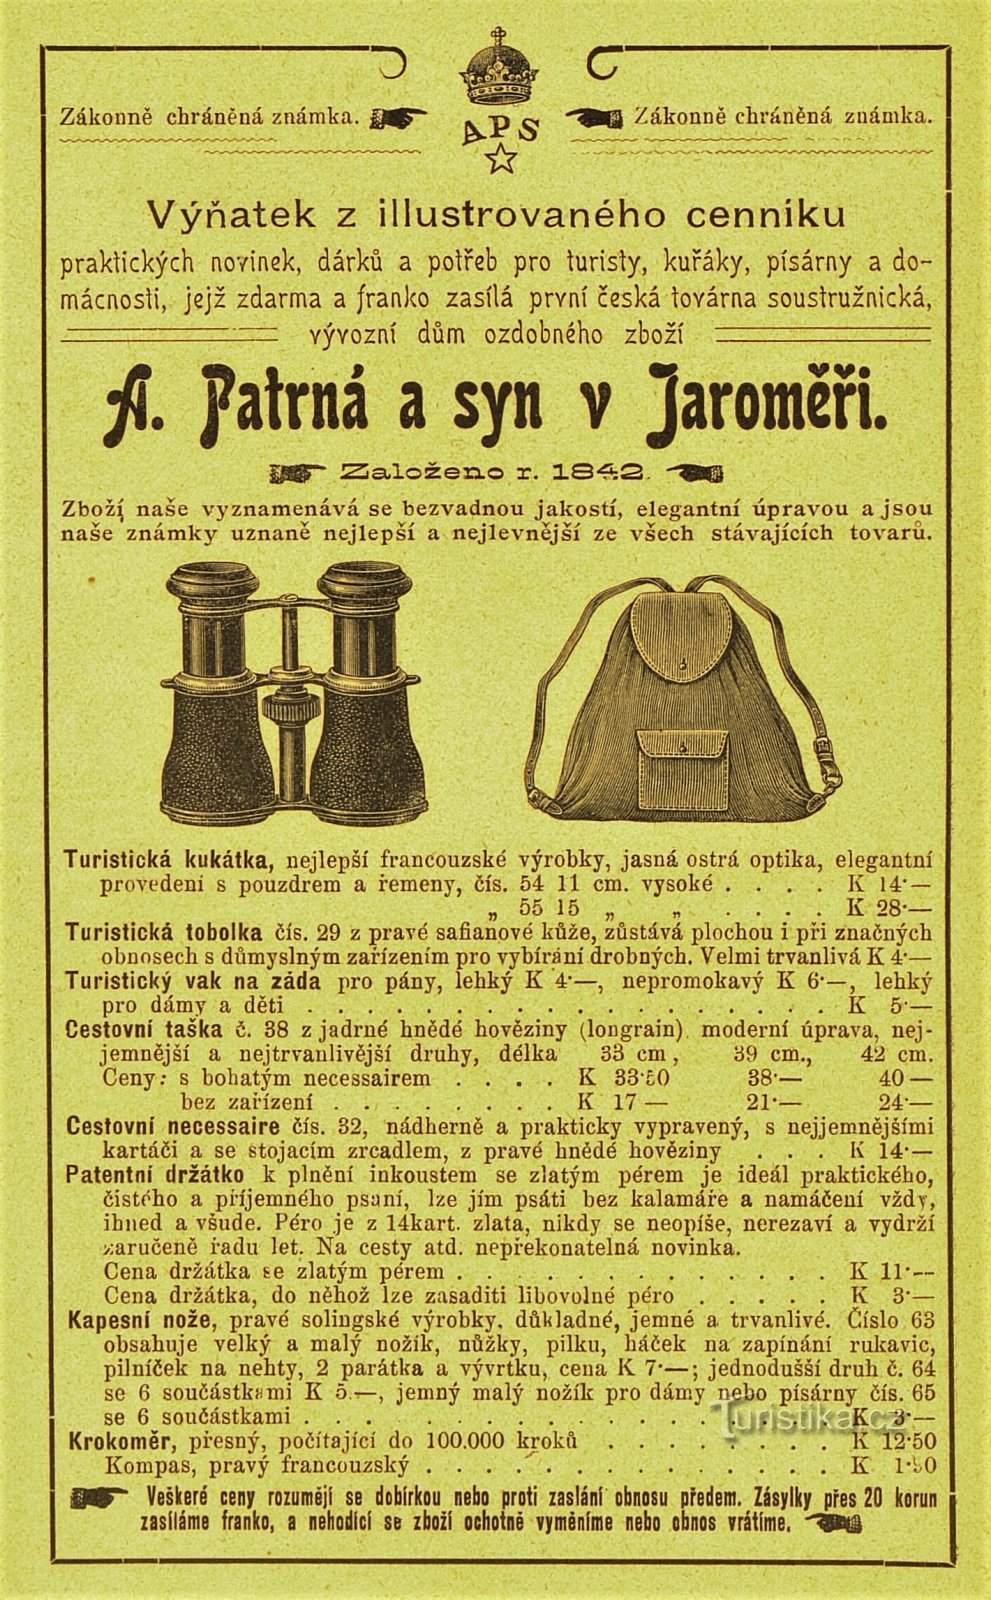 Anuncio contemporáneo de la empresa A. Patrná e hijo en Jaroměř (1902)